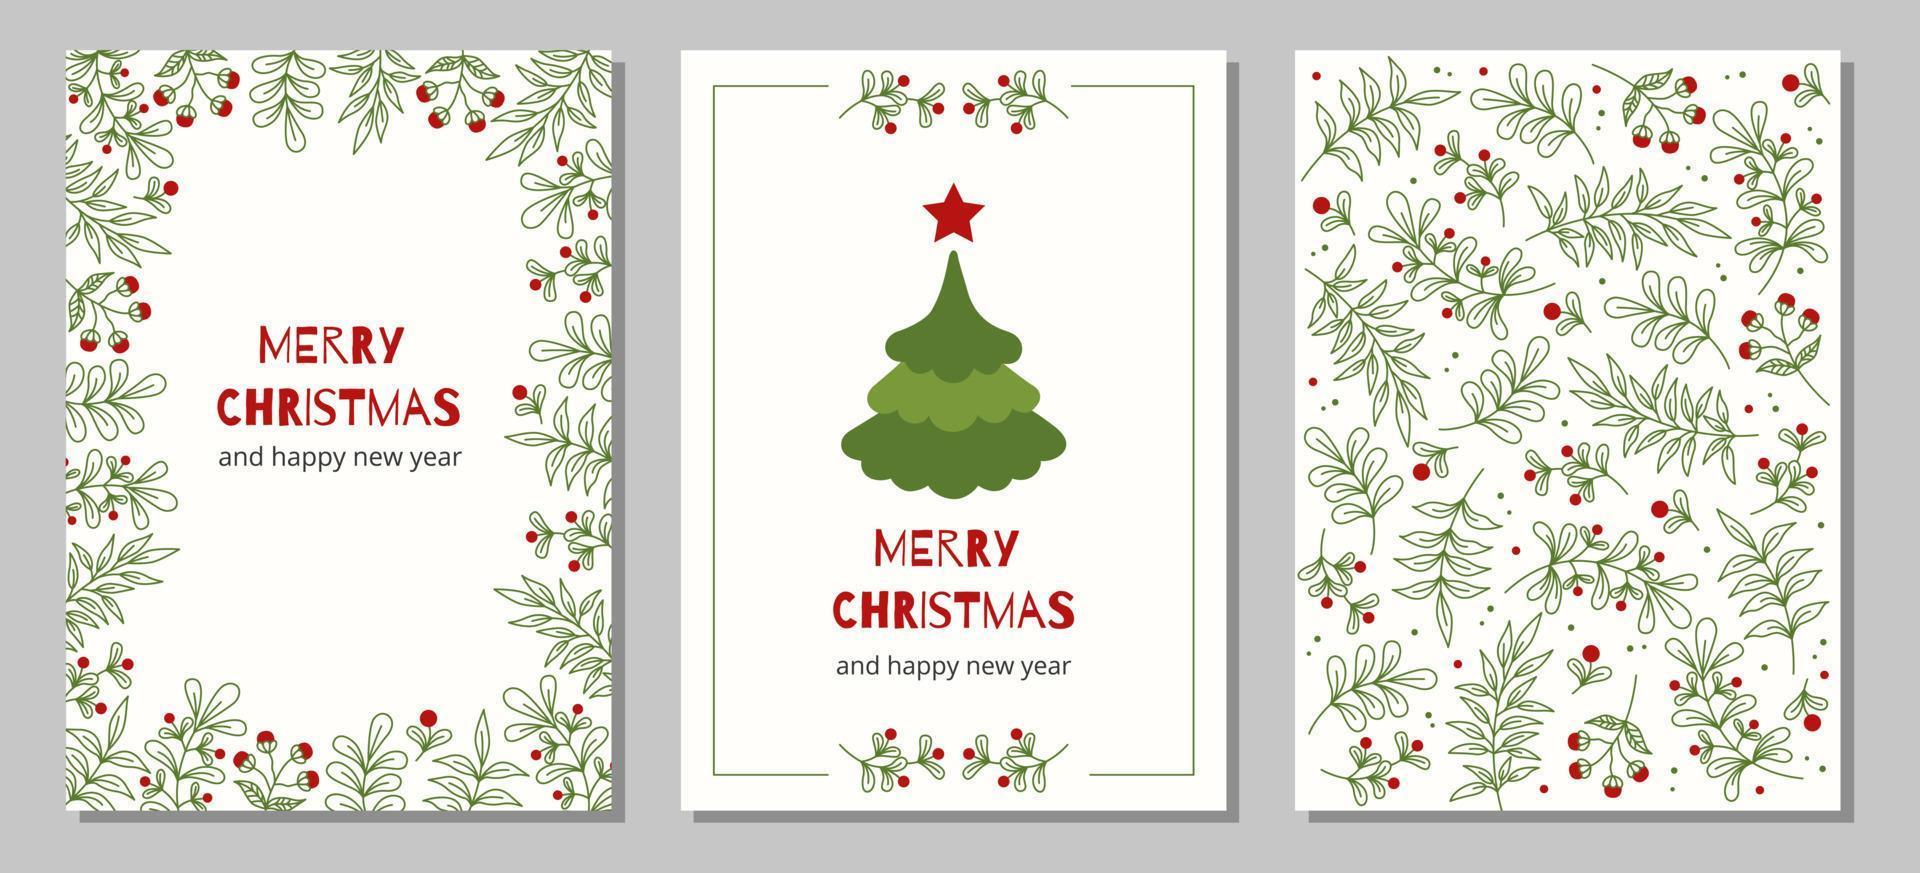 satz weihnachts- und frohes neues jahr grußkarten mit weihnachtsbaum, blumenrahmen und hintergründen. vektor